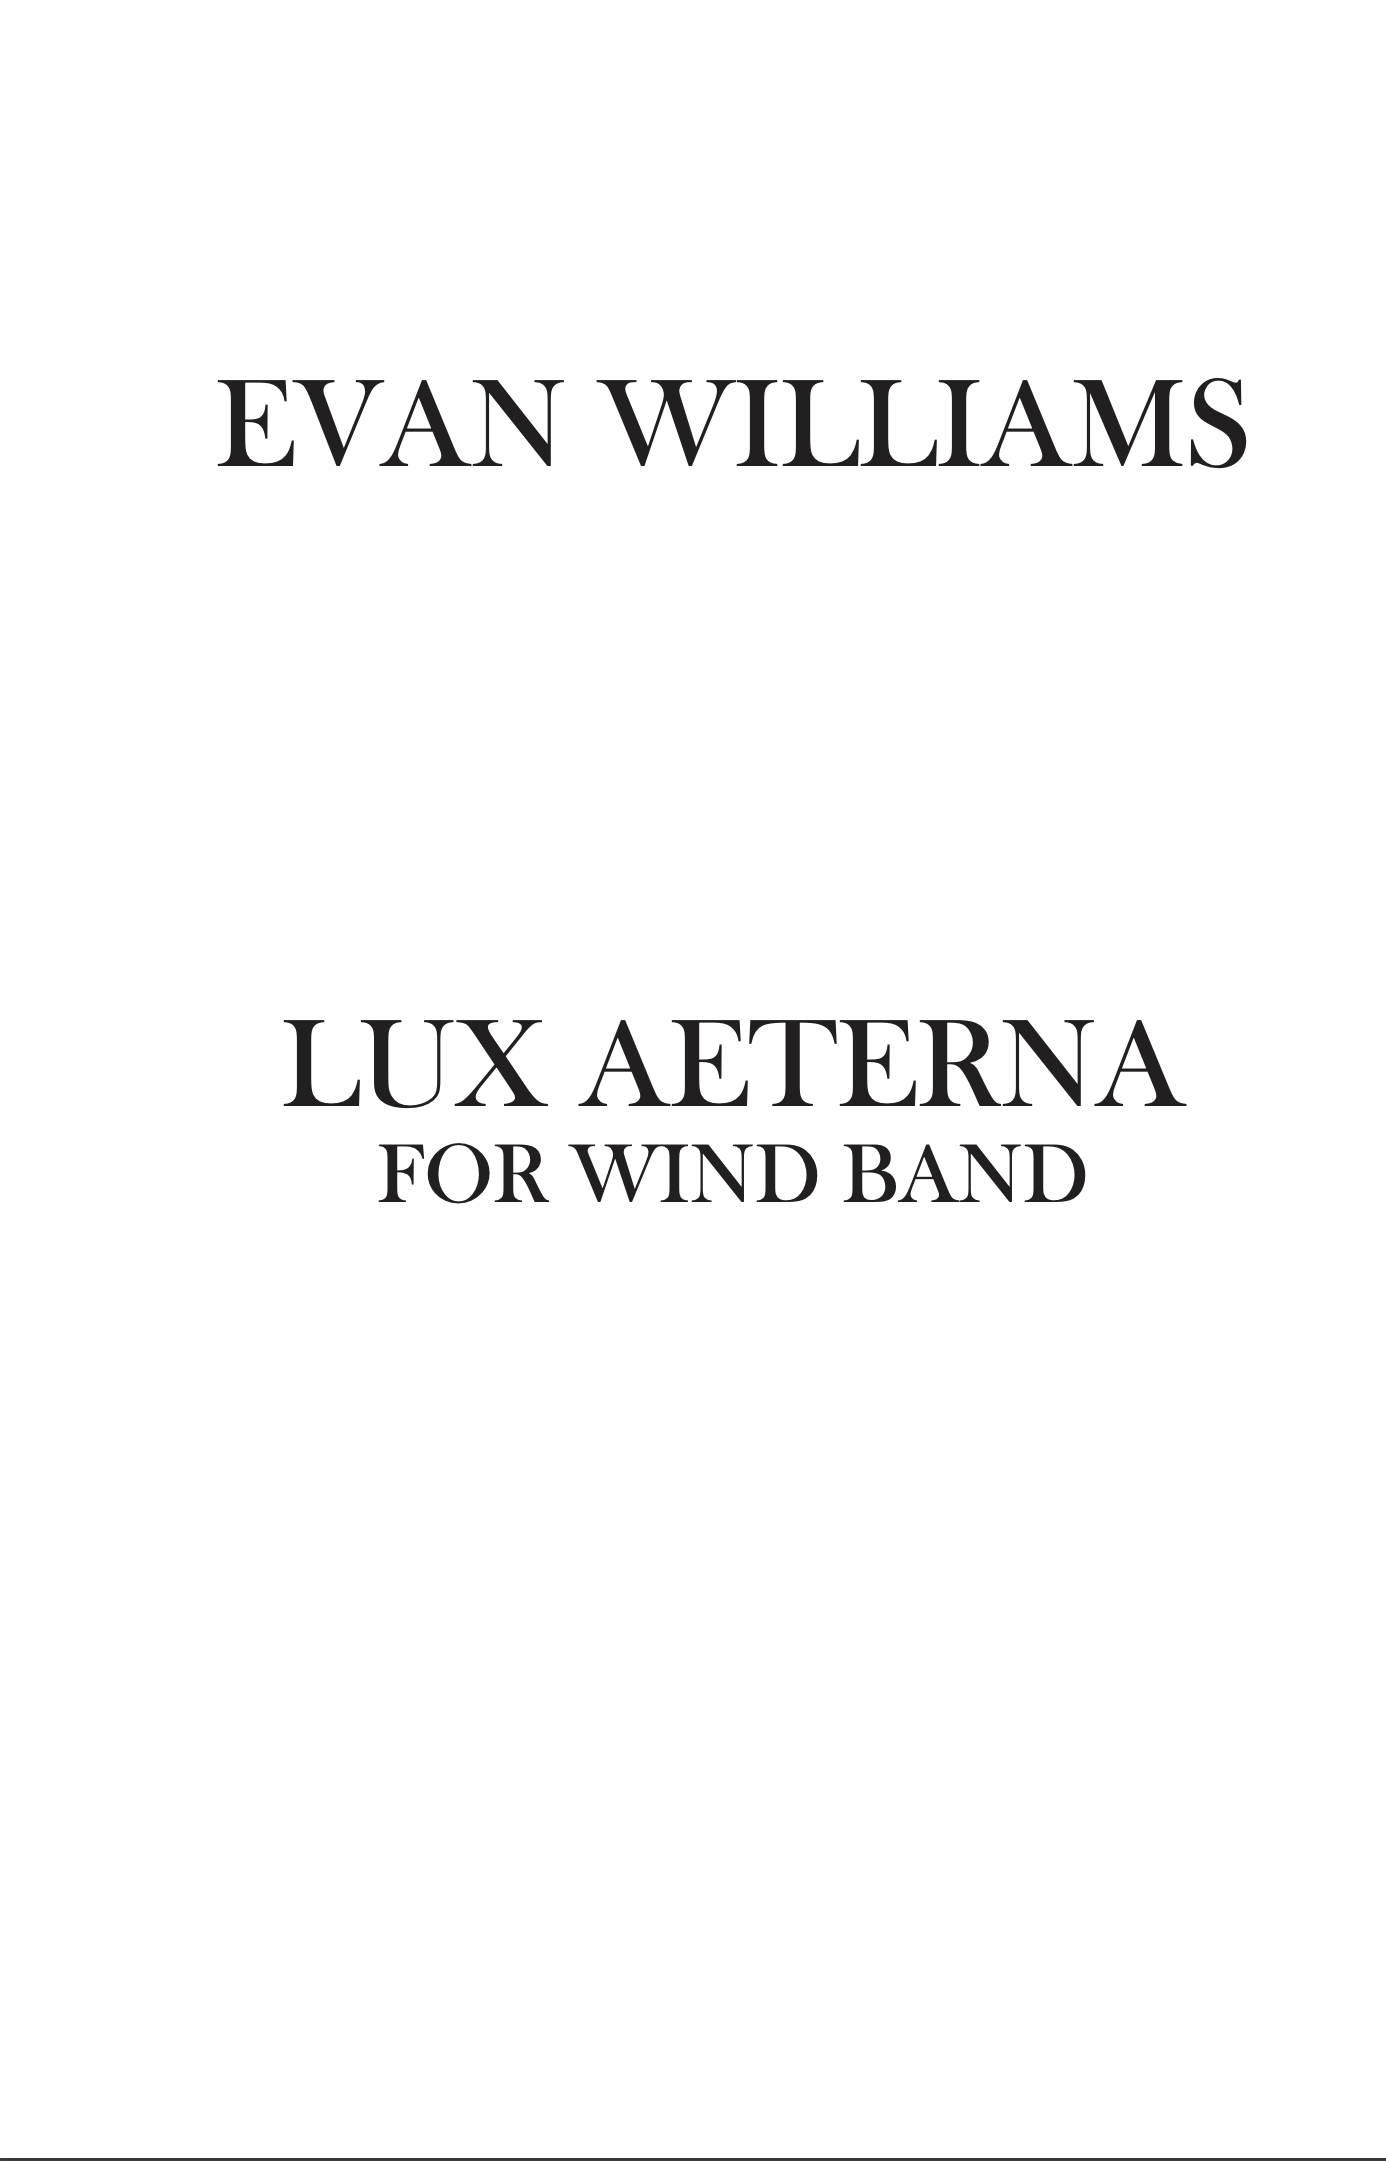 Lux Aeterna by Evan Williams